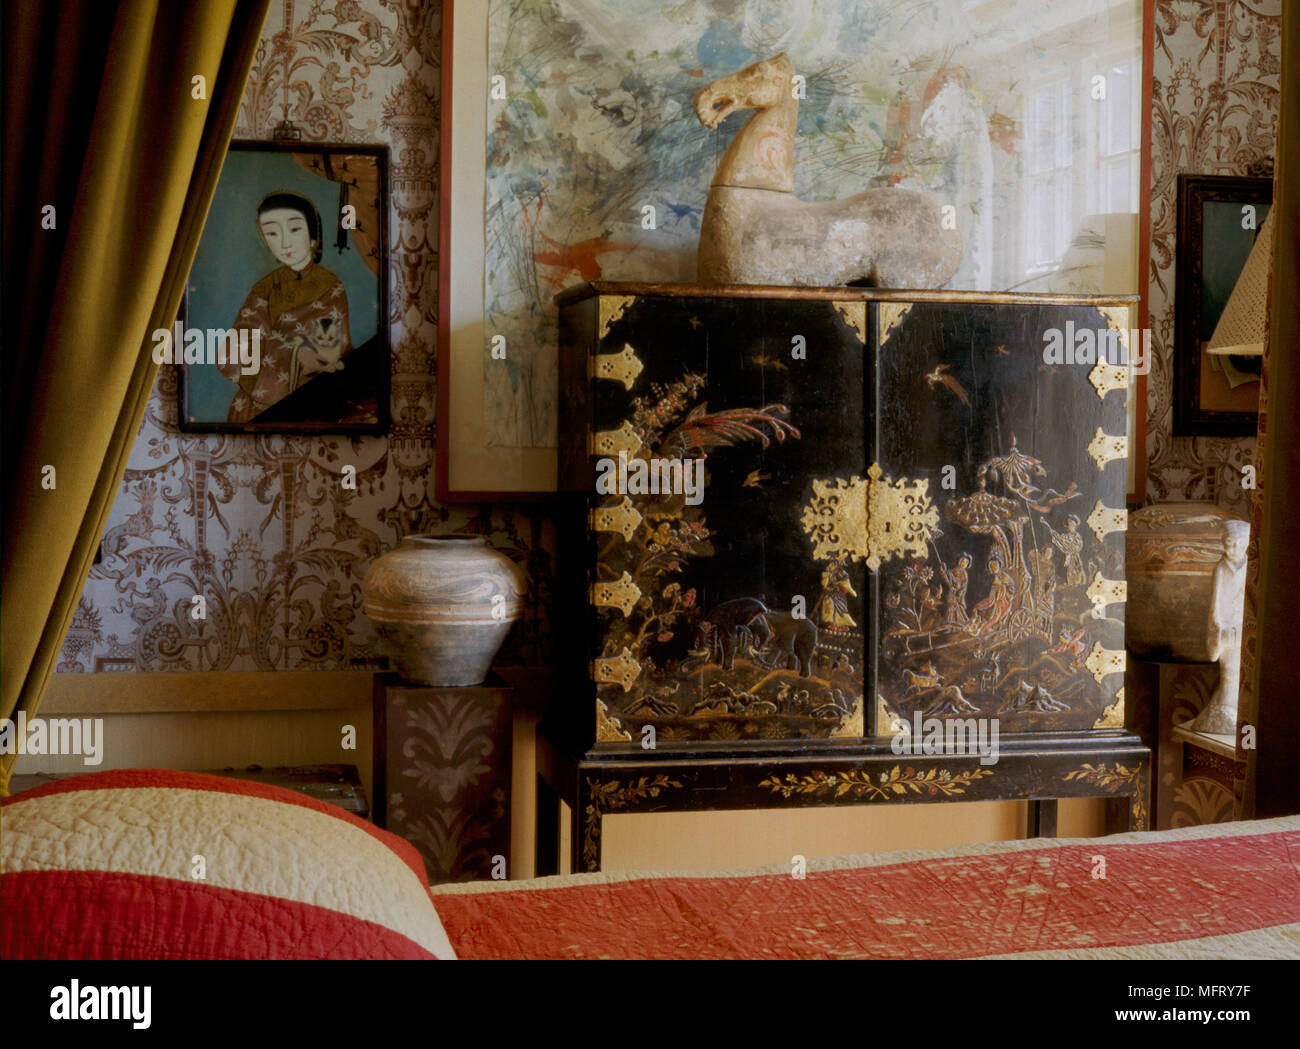 Un detalle tradicional de un dormitorio con cama con dosel cama rayas laca negra cubierta gabinete ormolu artefactos de cerámica china Foto de stock